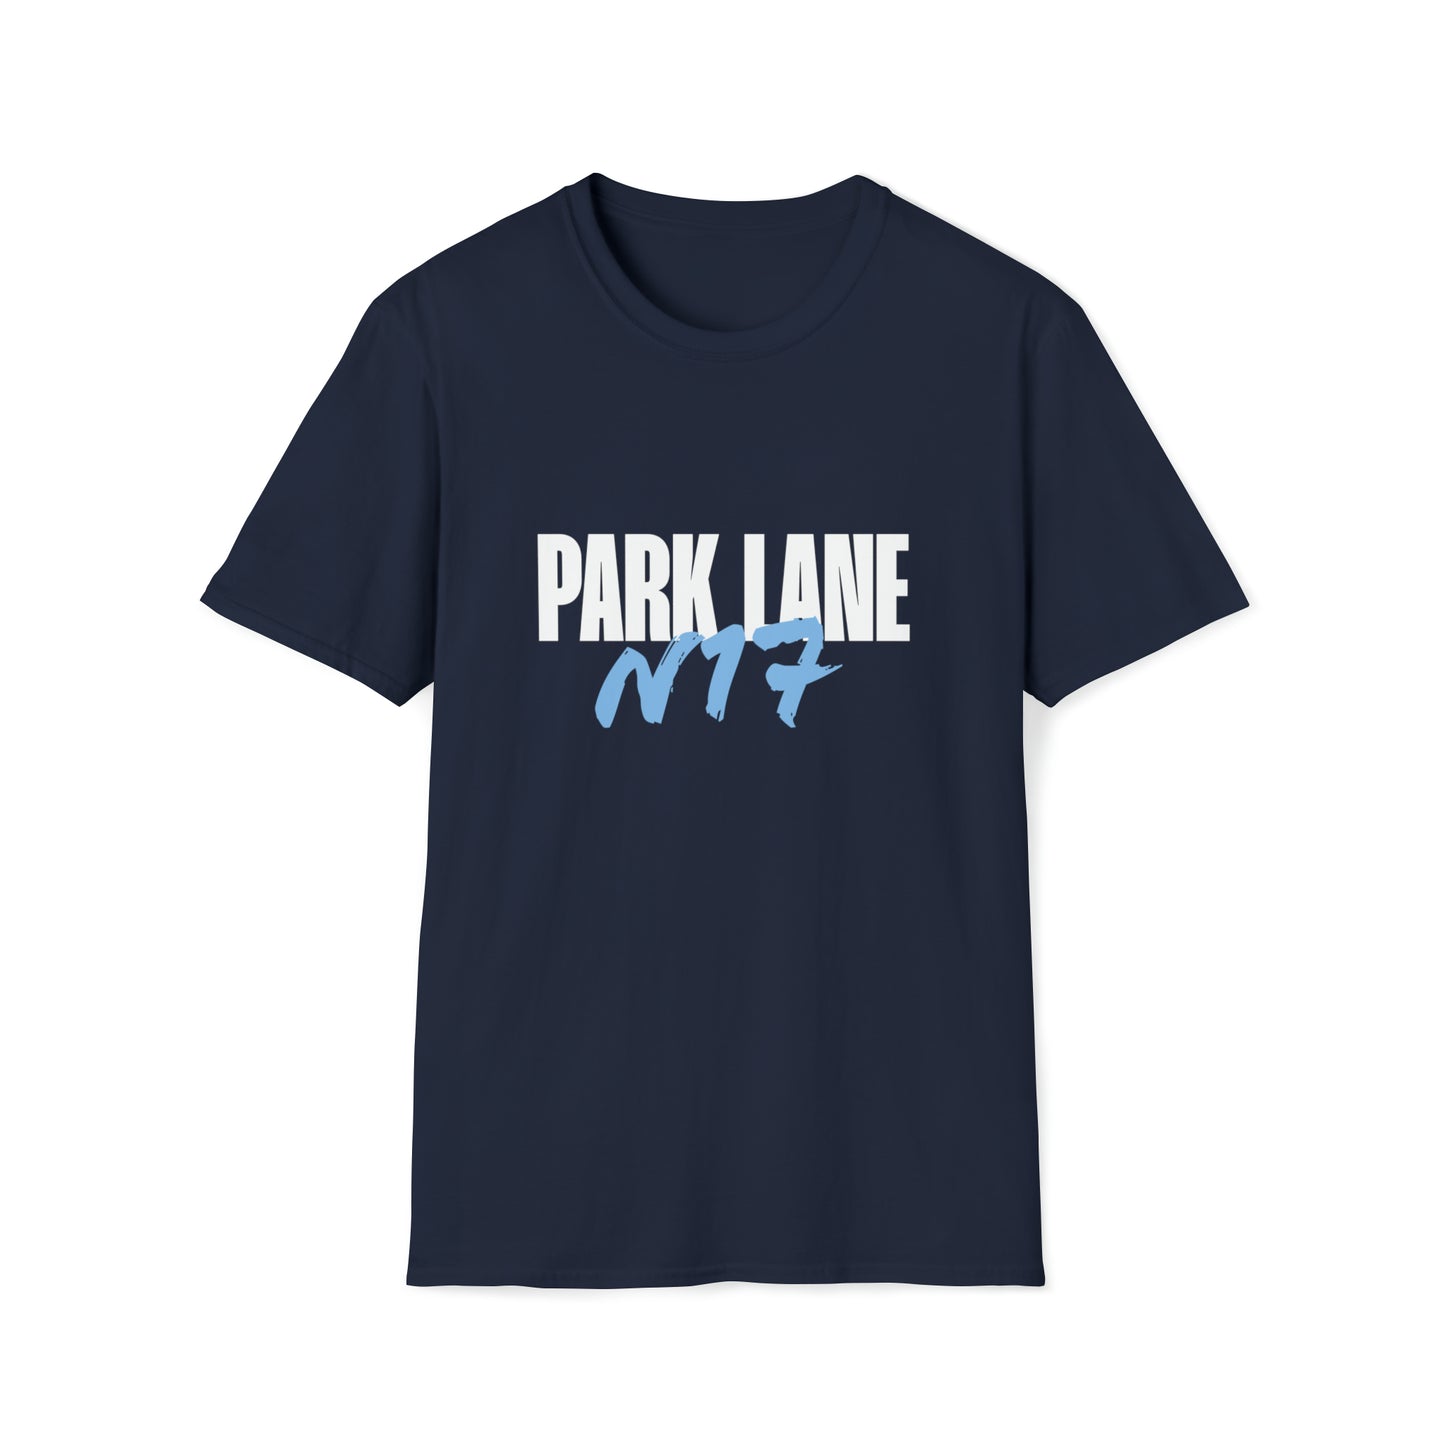 WATTV Park Lane N17 T-Shirt